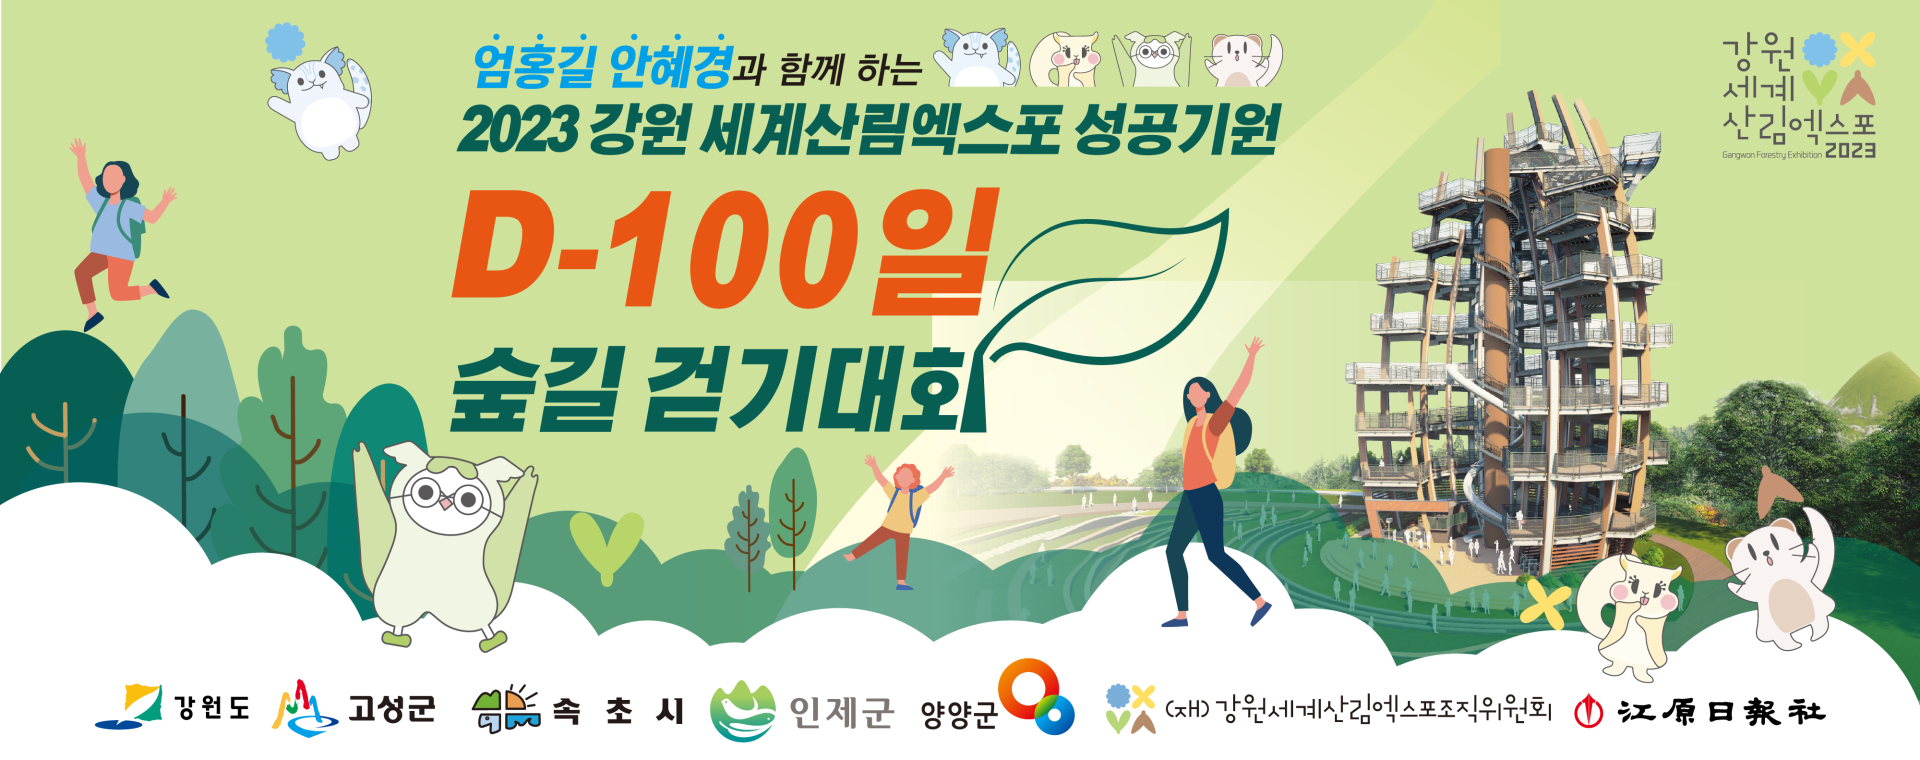 2023 강원세계산림엑스포 성공기원 D-100 숲길 걷기대회